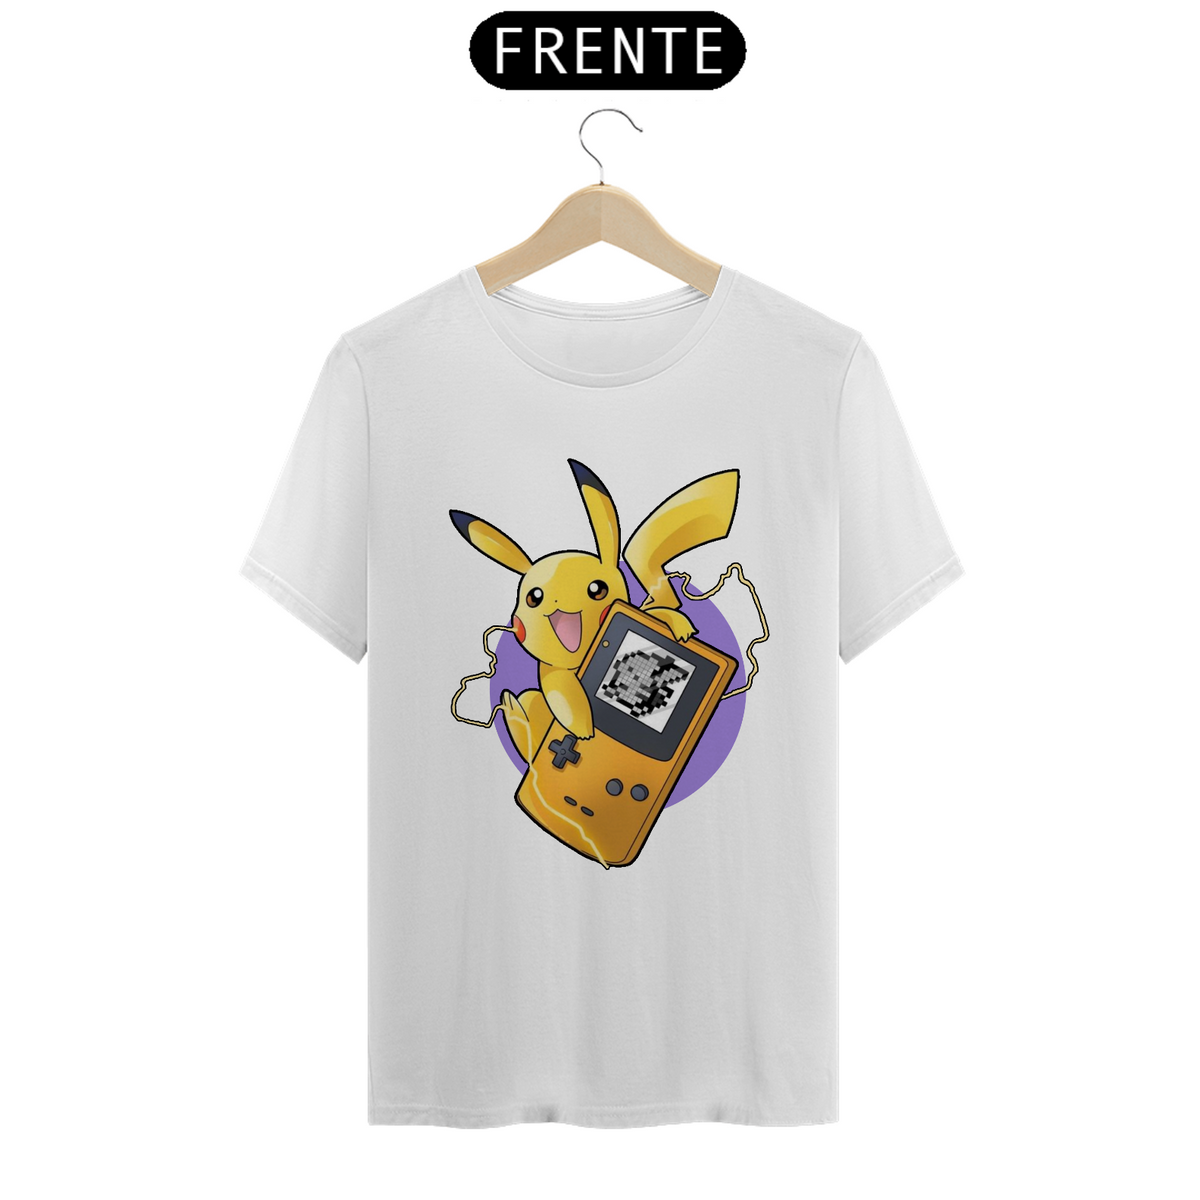 Nome do produto: Camisa pikachu